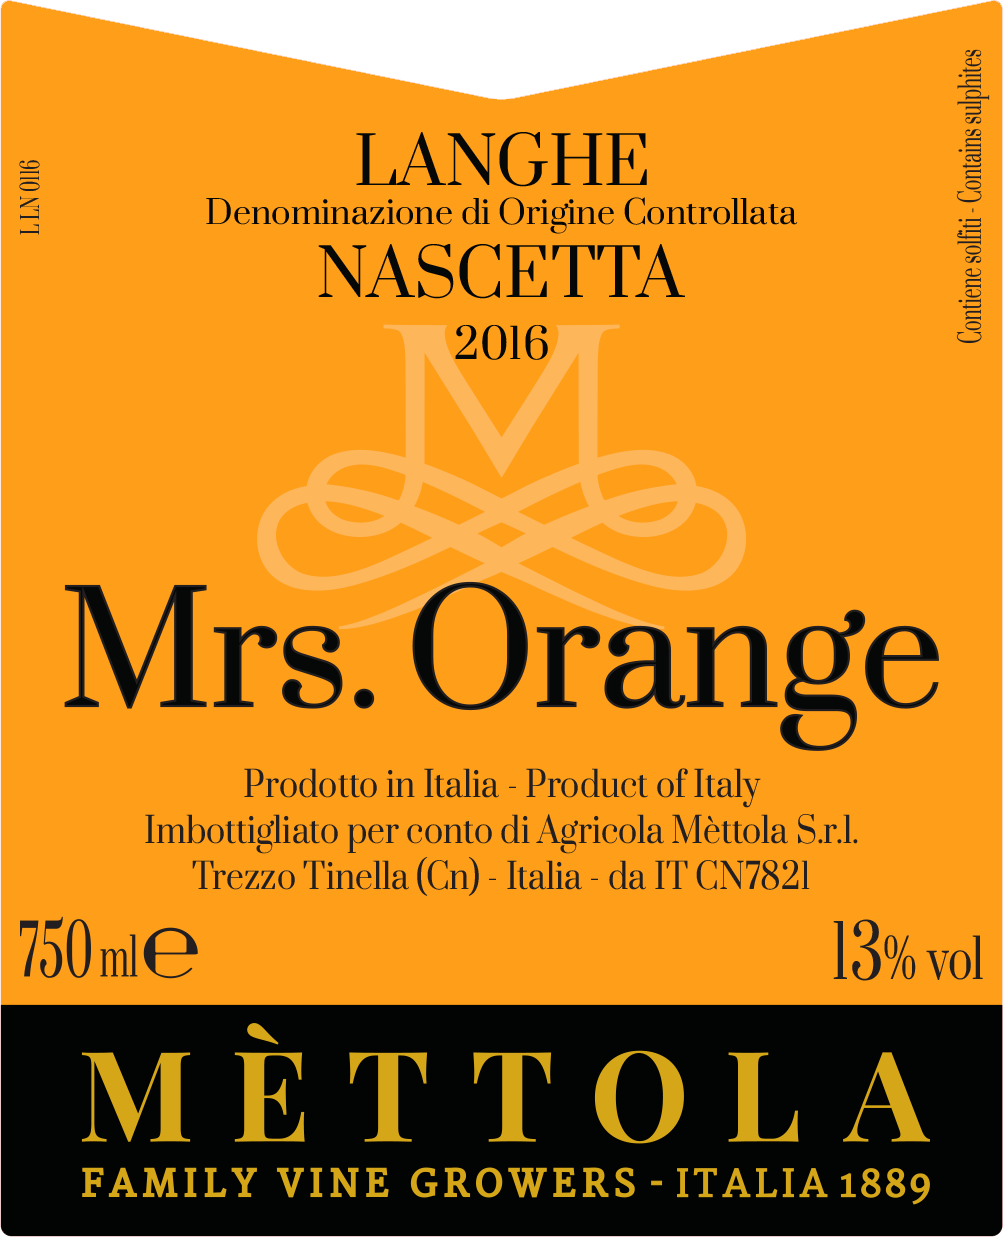 Mrs. Orange - Langhe Nascetta Doc